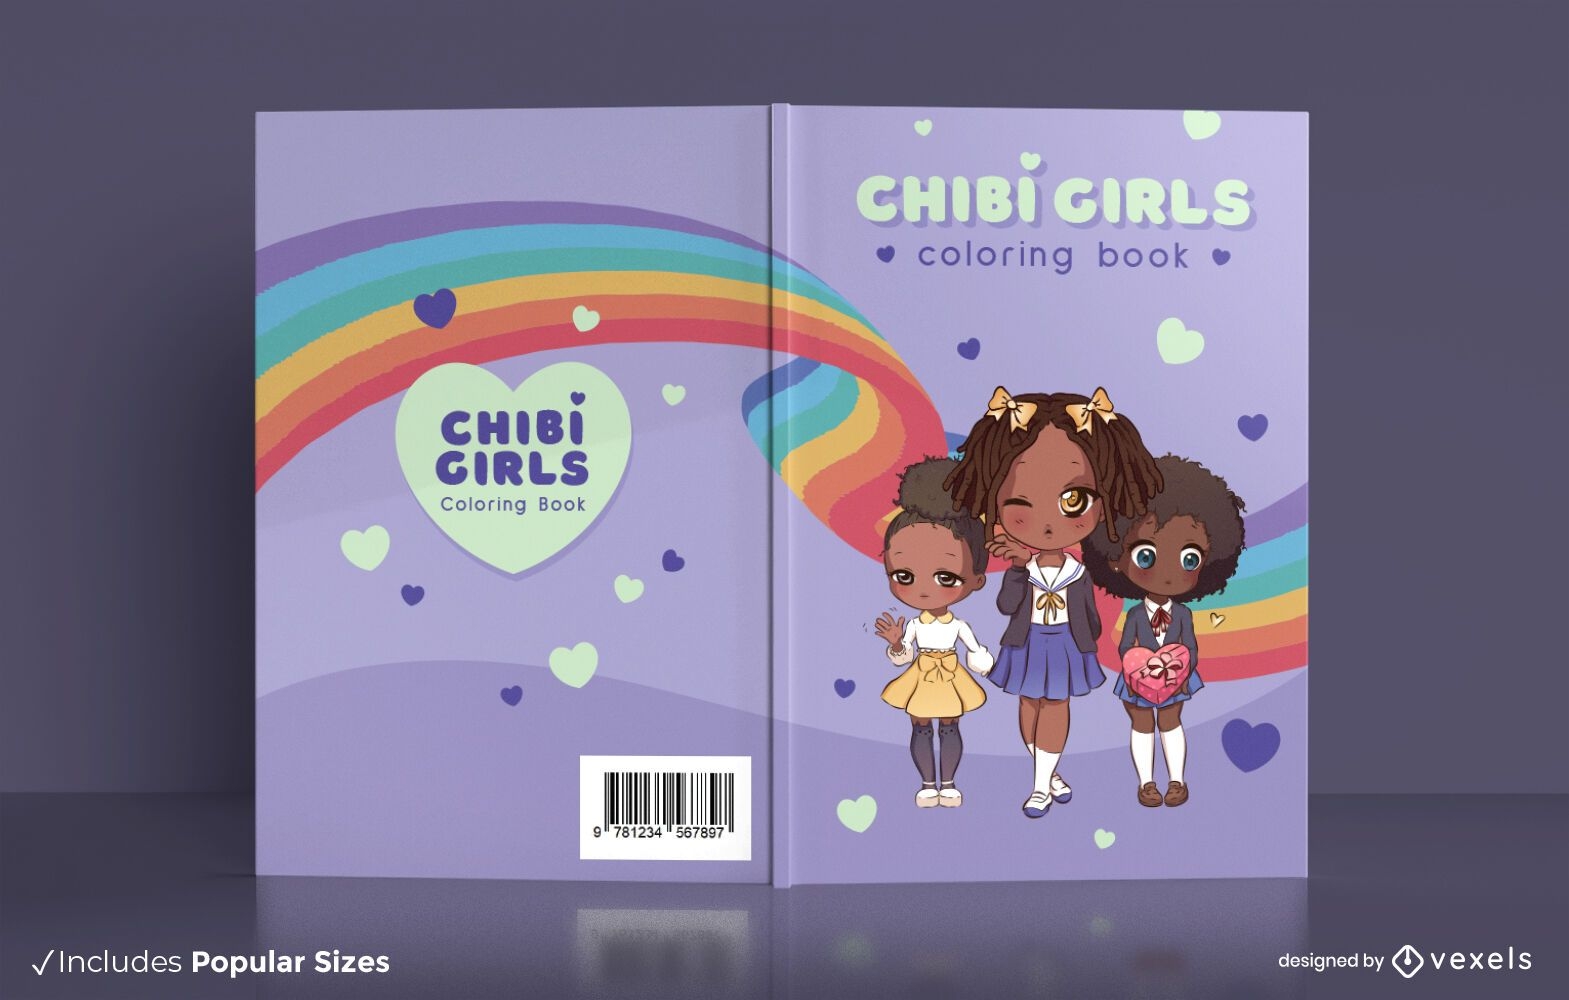 Diseño de portada de libro para colorear de chicas chibi